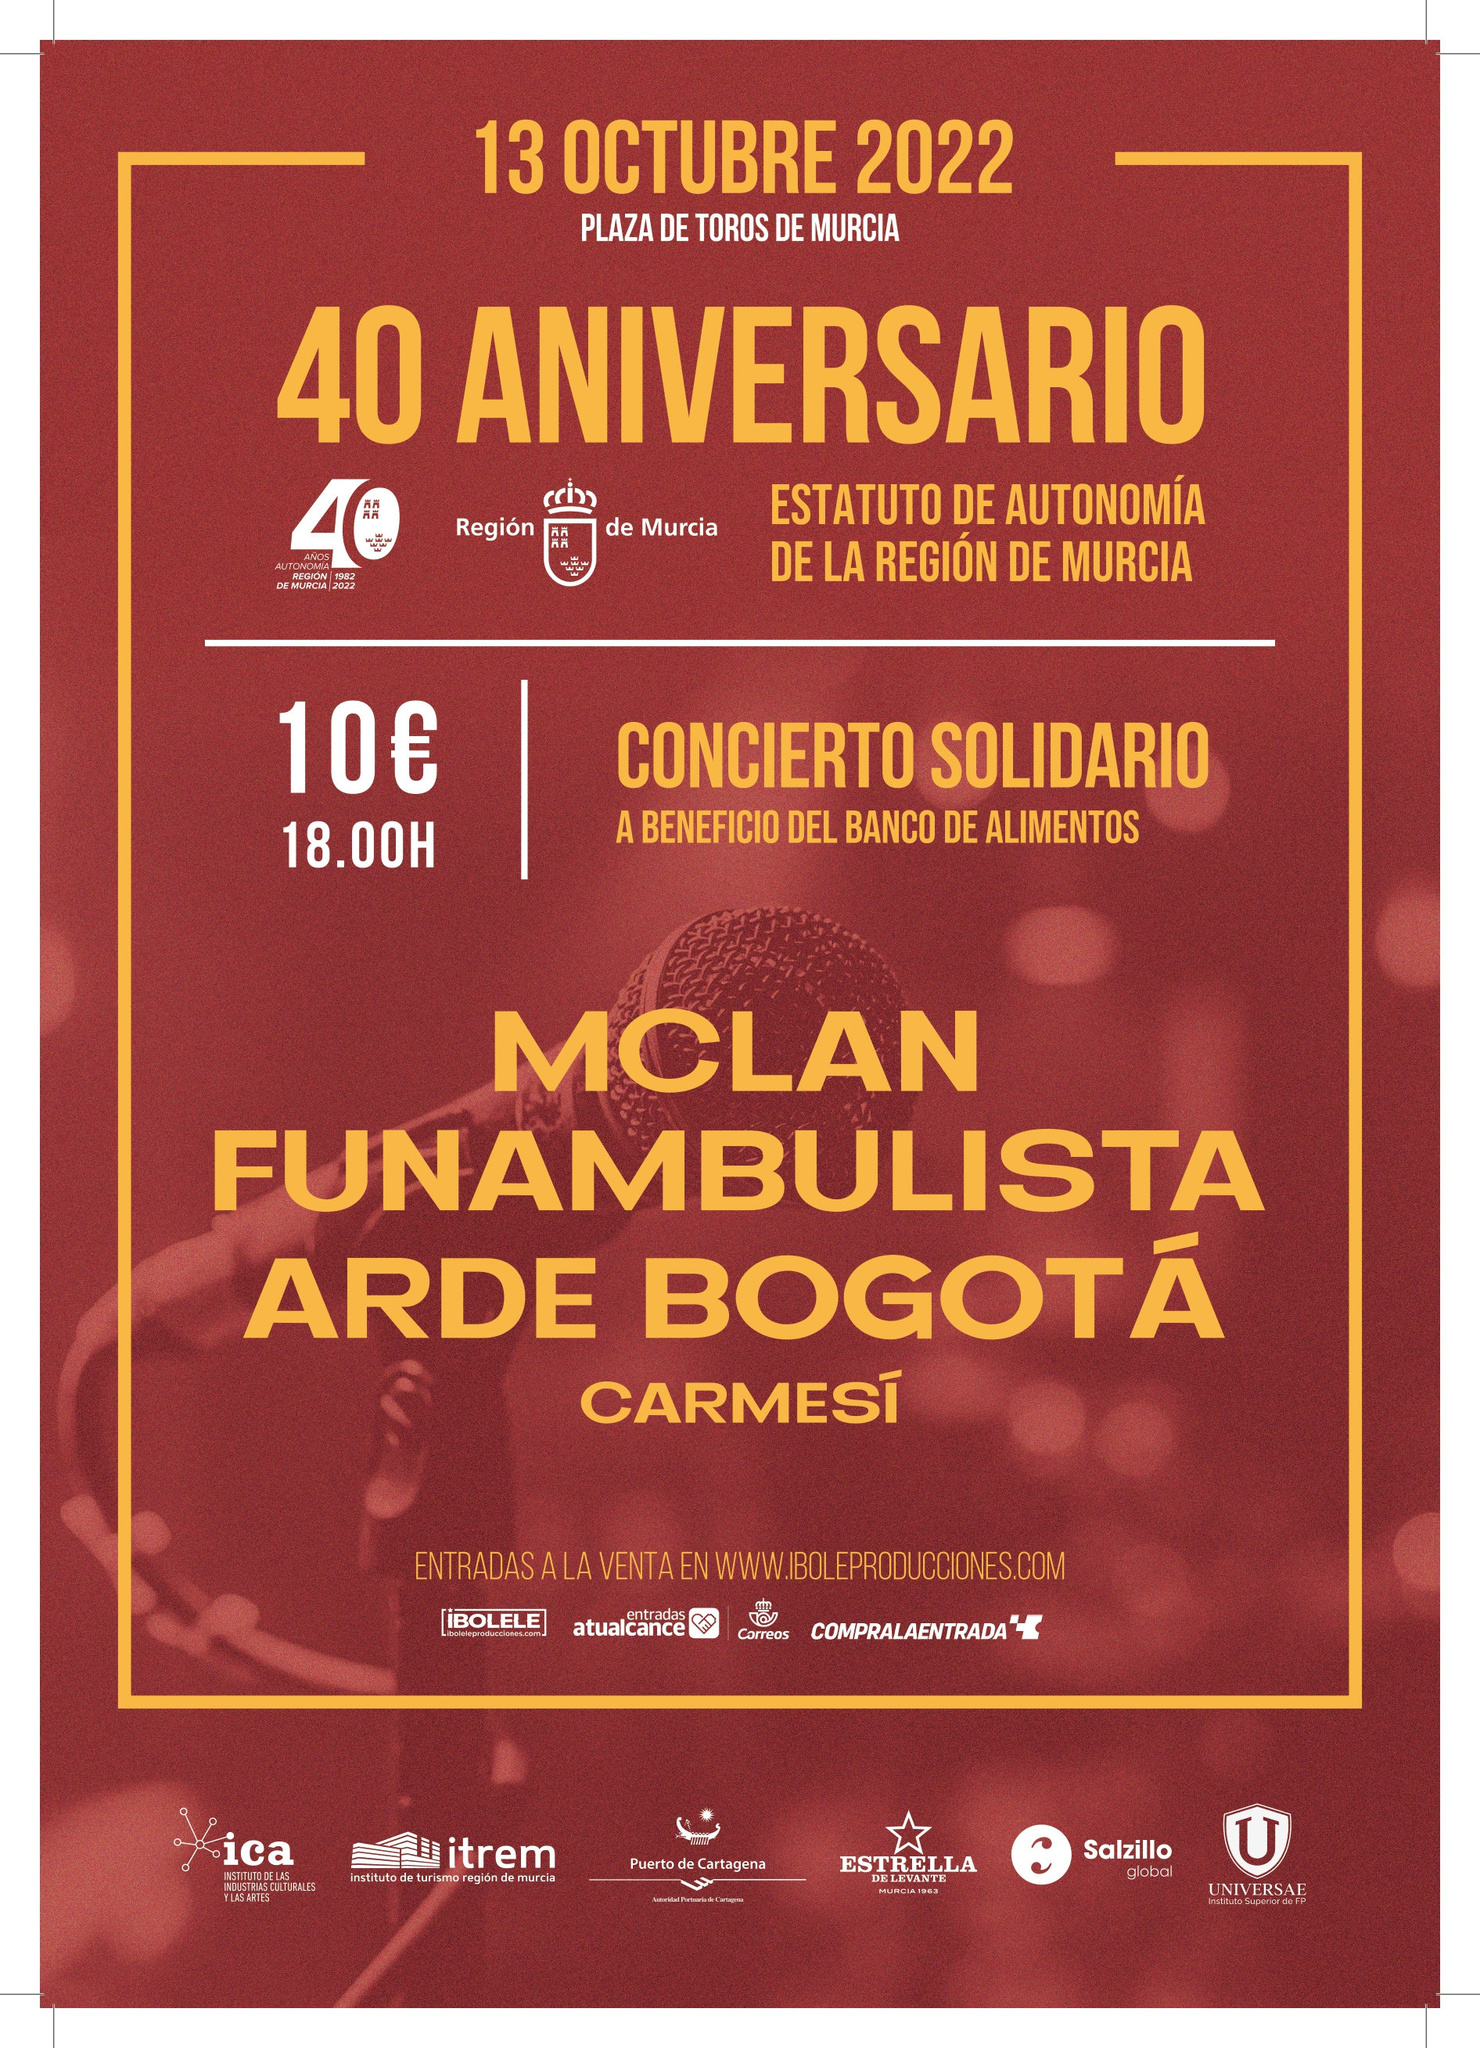 Cartel del concierto del 40 aniversario del Estatuto de Autonomía